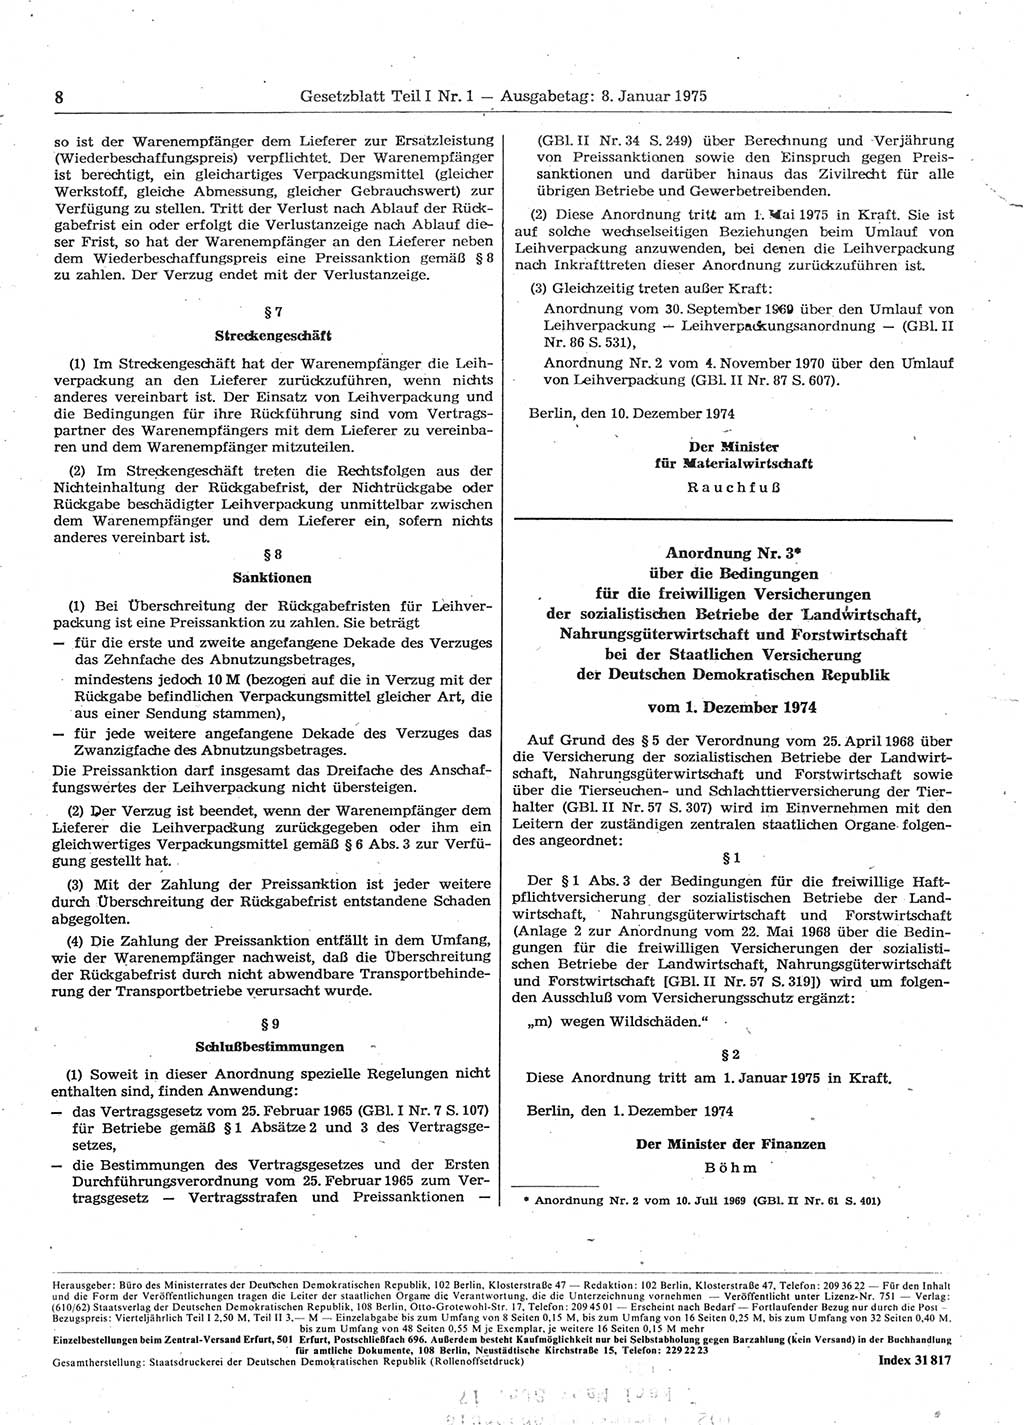 Gesetzblatt (GBl.) der Deutschen Demokratischen Republik (DDR) Teil Ⅰ 1975, Seite 8 (GBl. DDR Ⅰ 1975, S. 8)